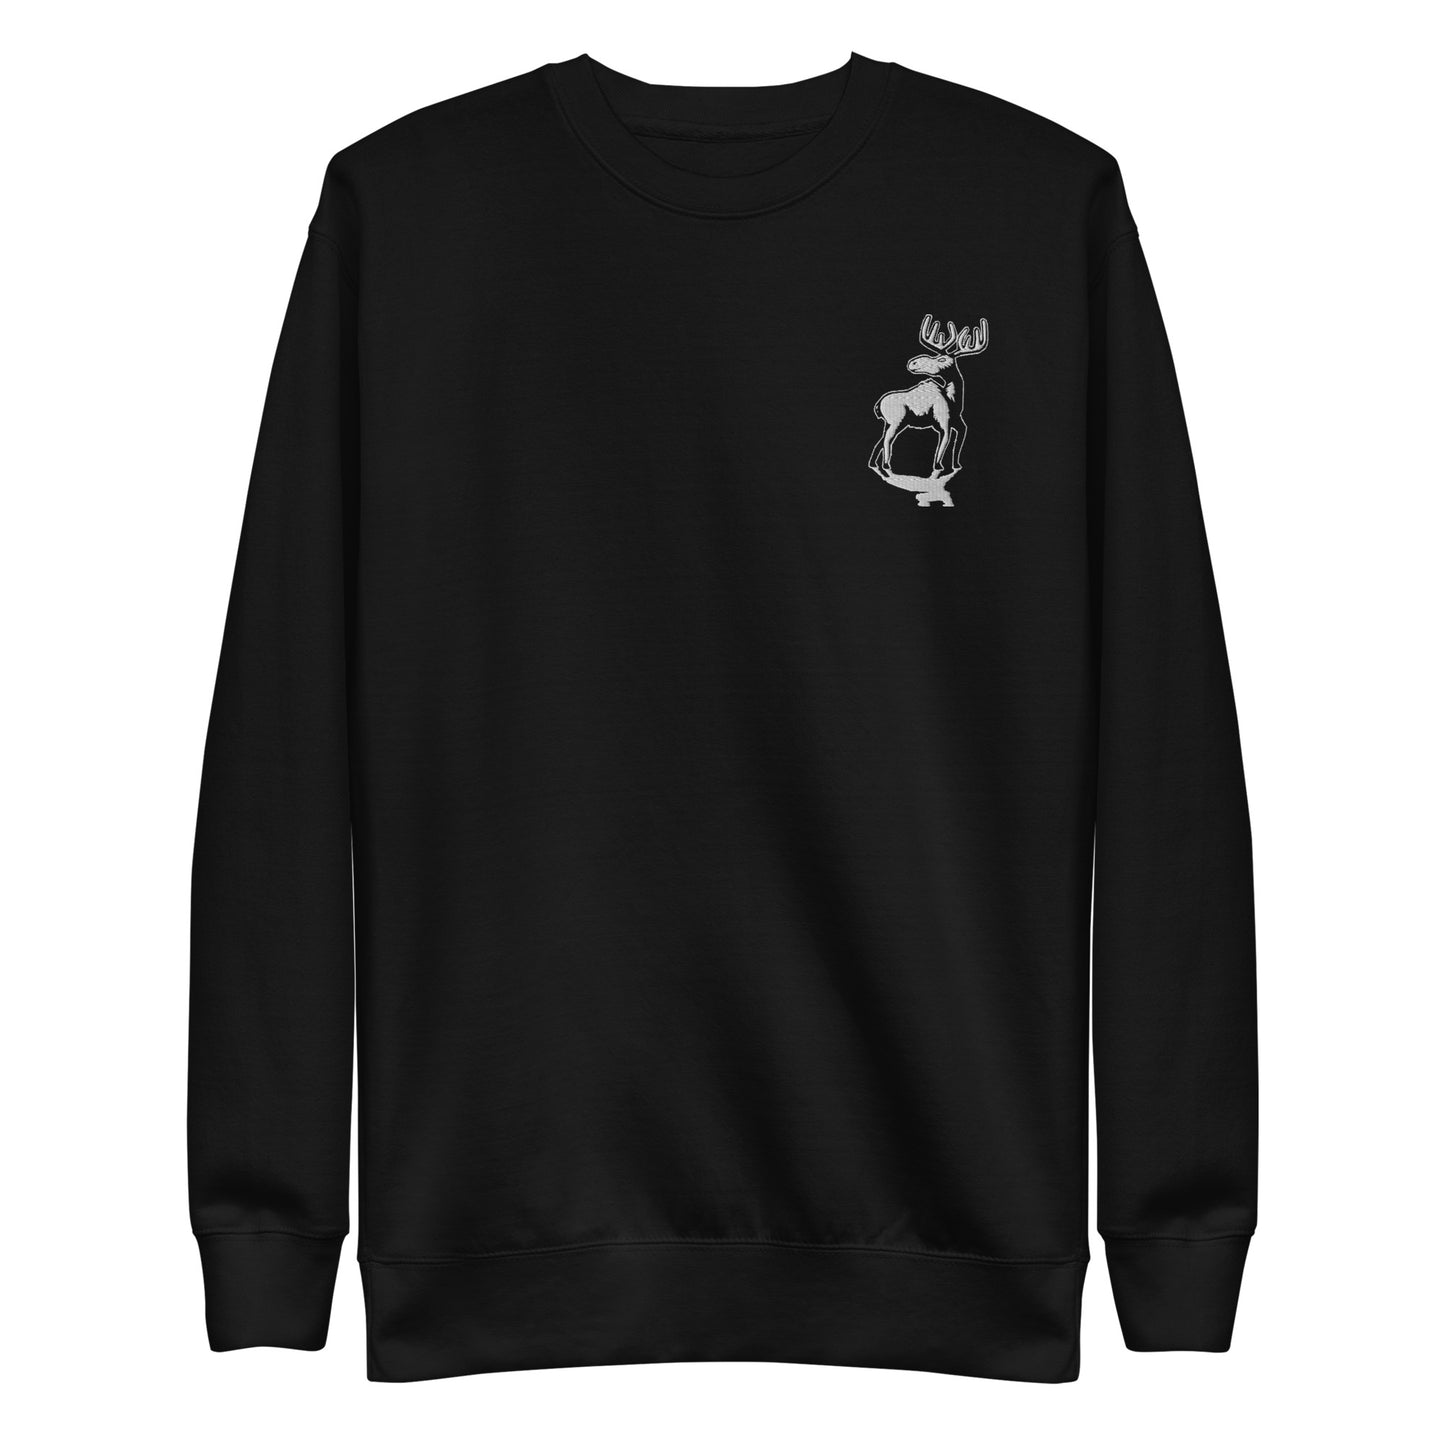 Moose - Unisex Premium Sweatshirt